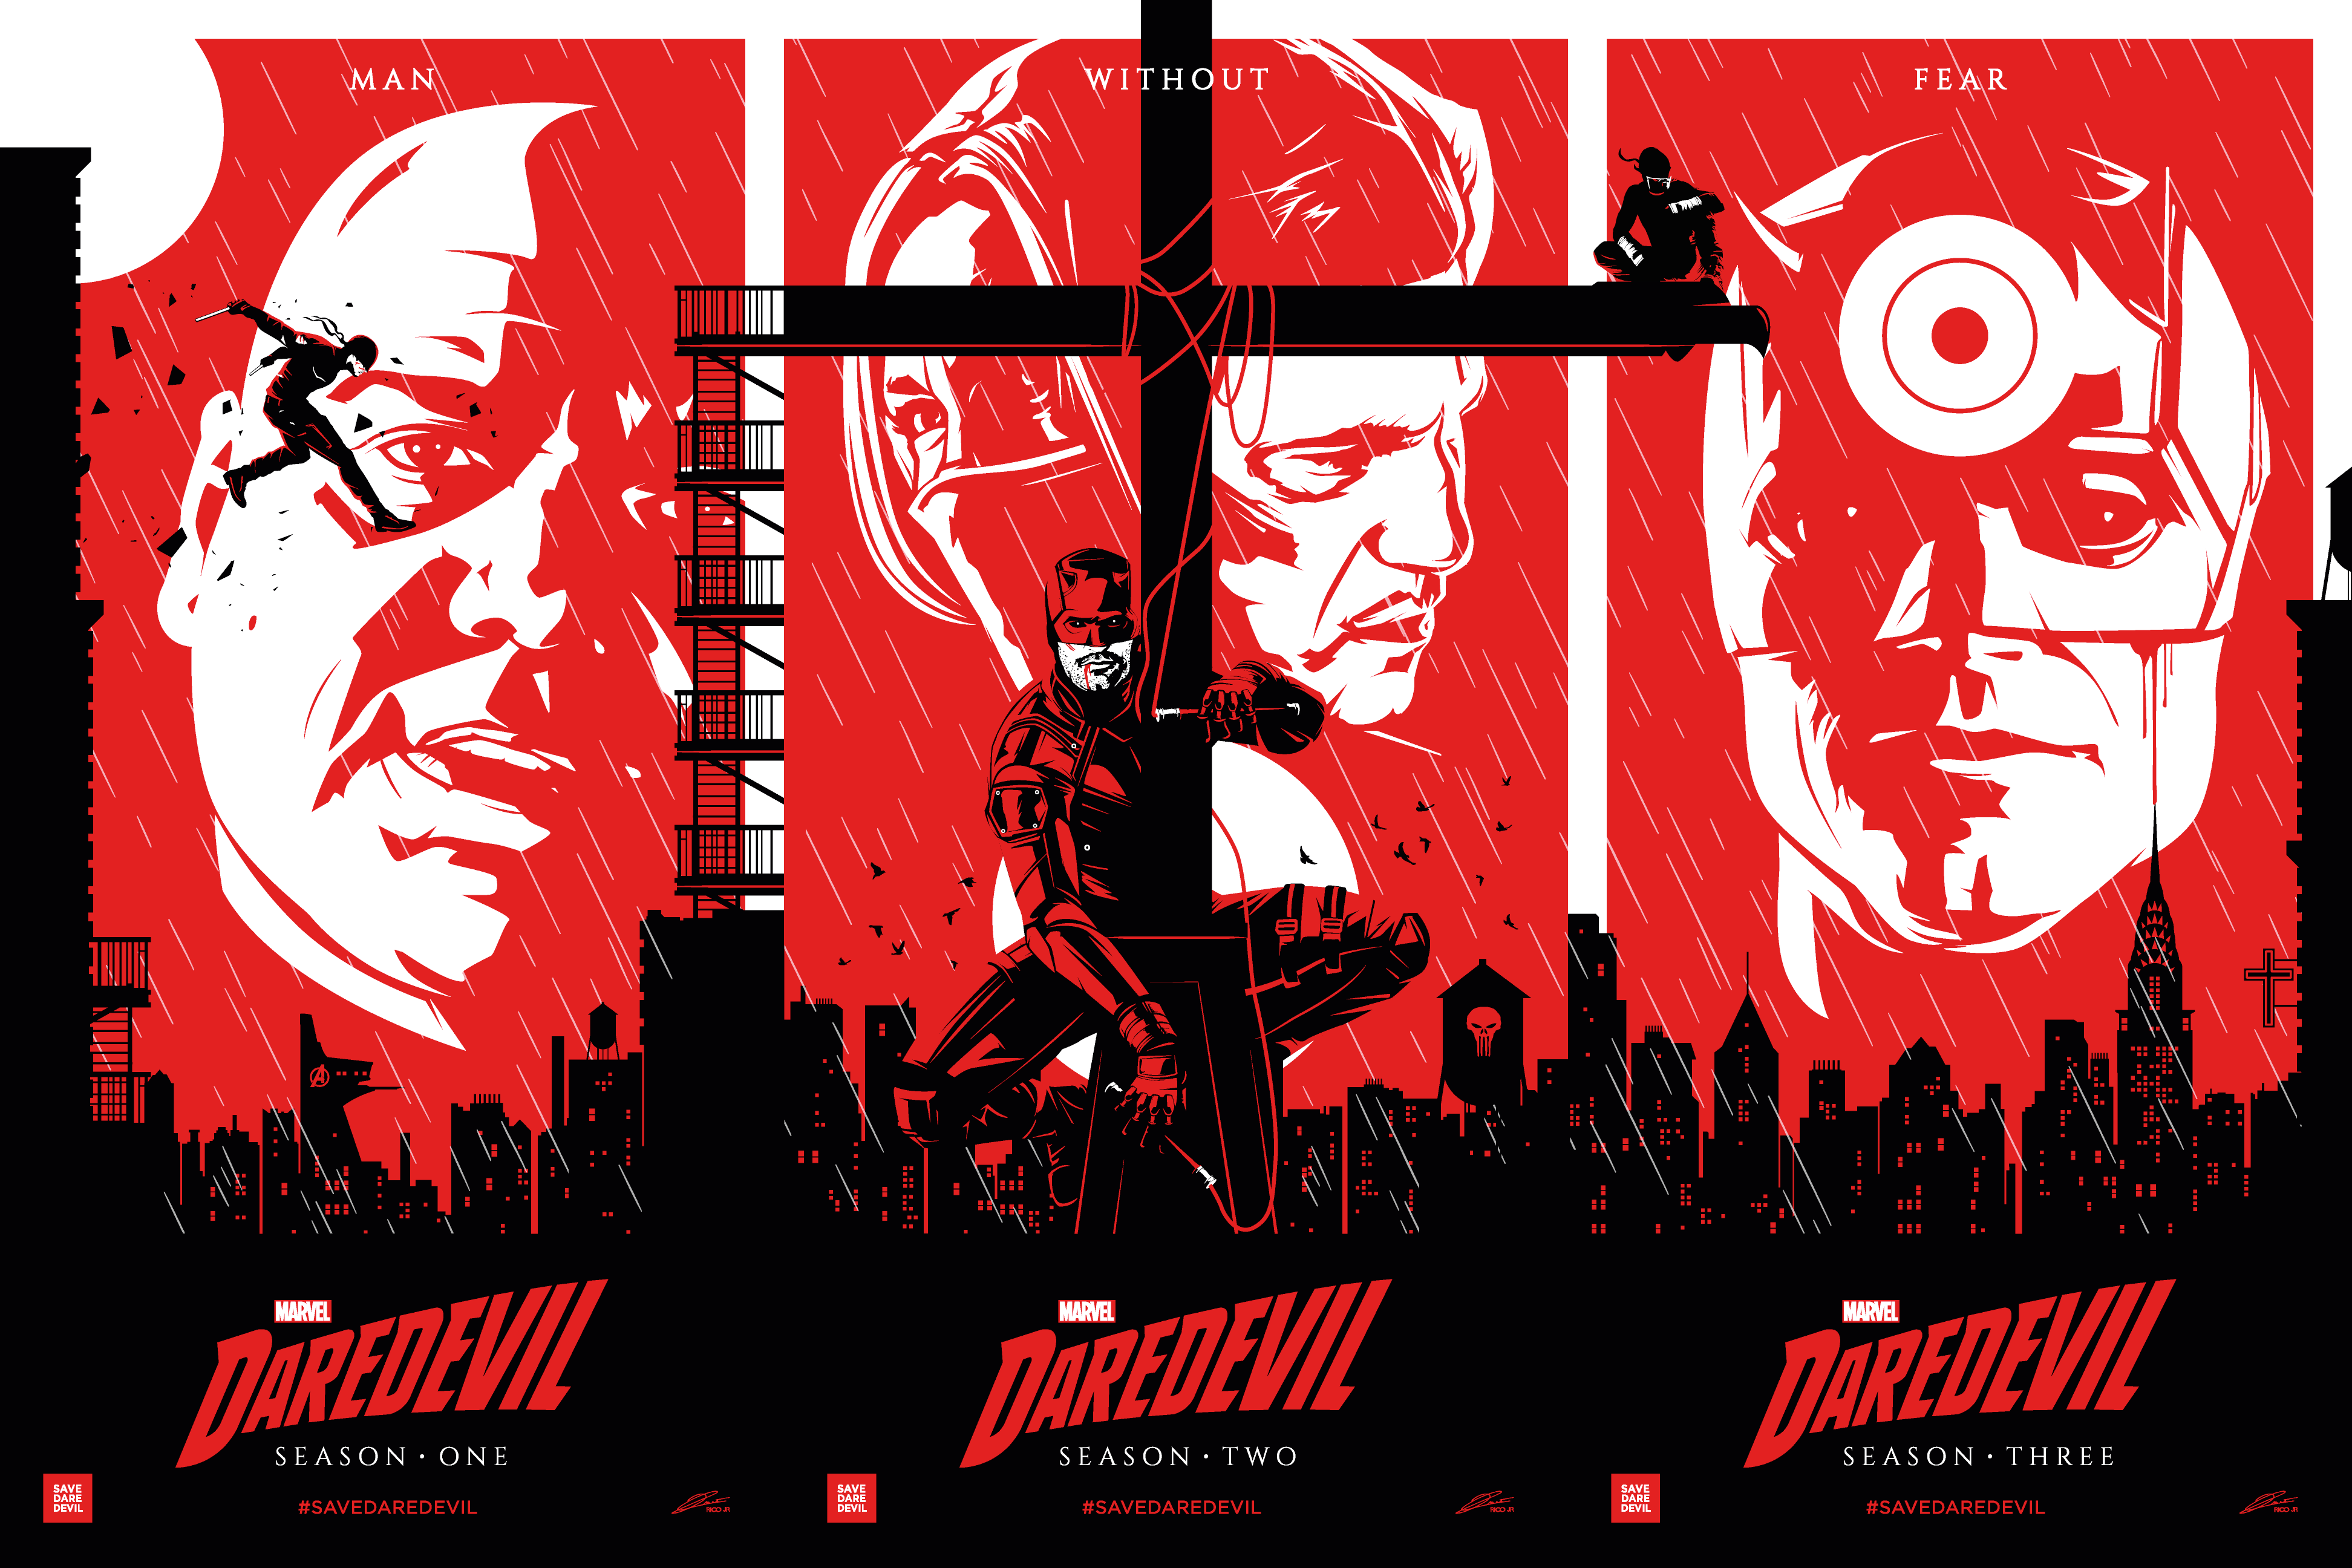 Daredevil 4k Ultra HD Wallpaper by Julien Rico Jr